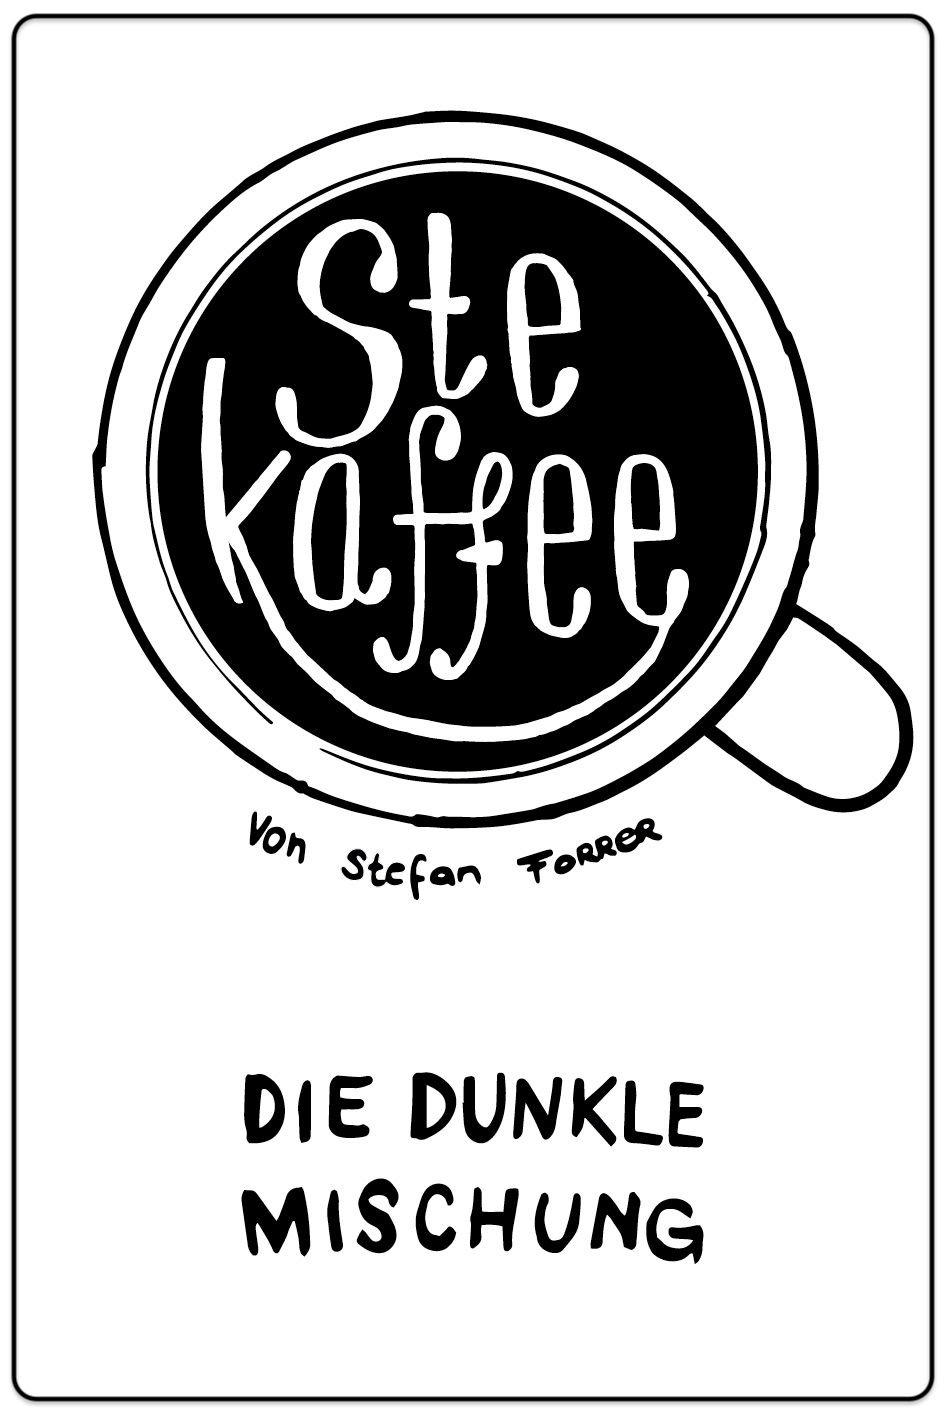 Die Dunkle / Stekaffee